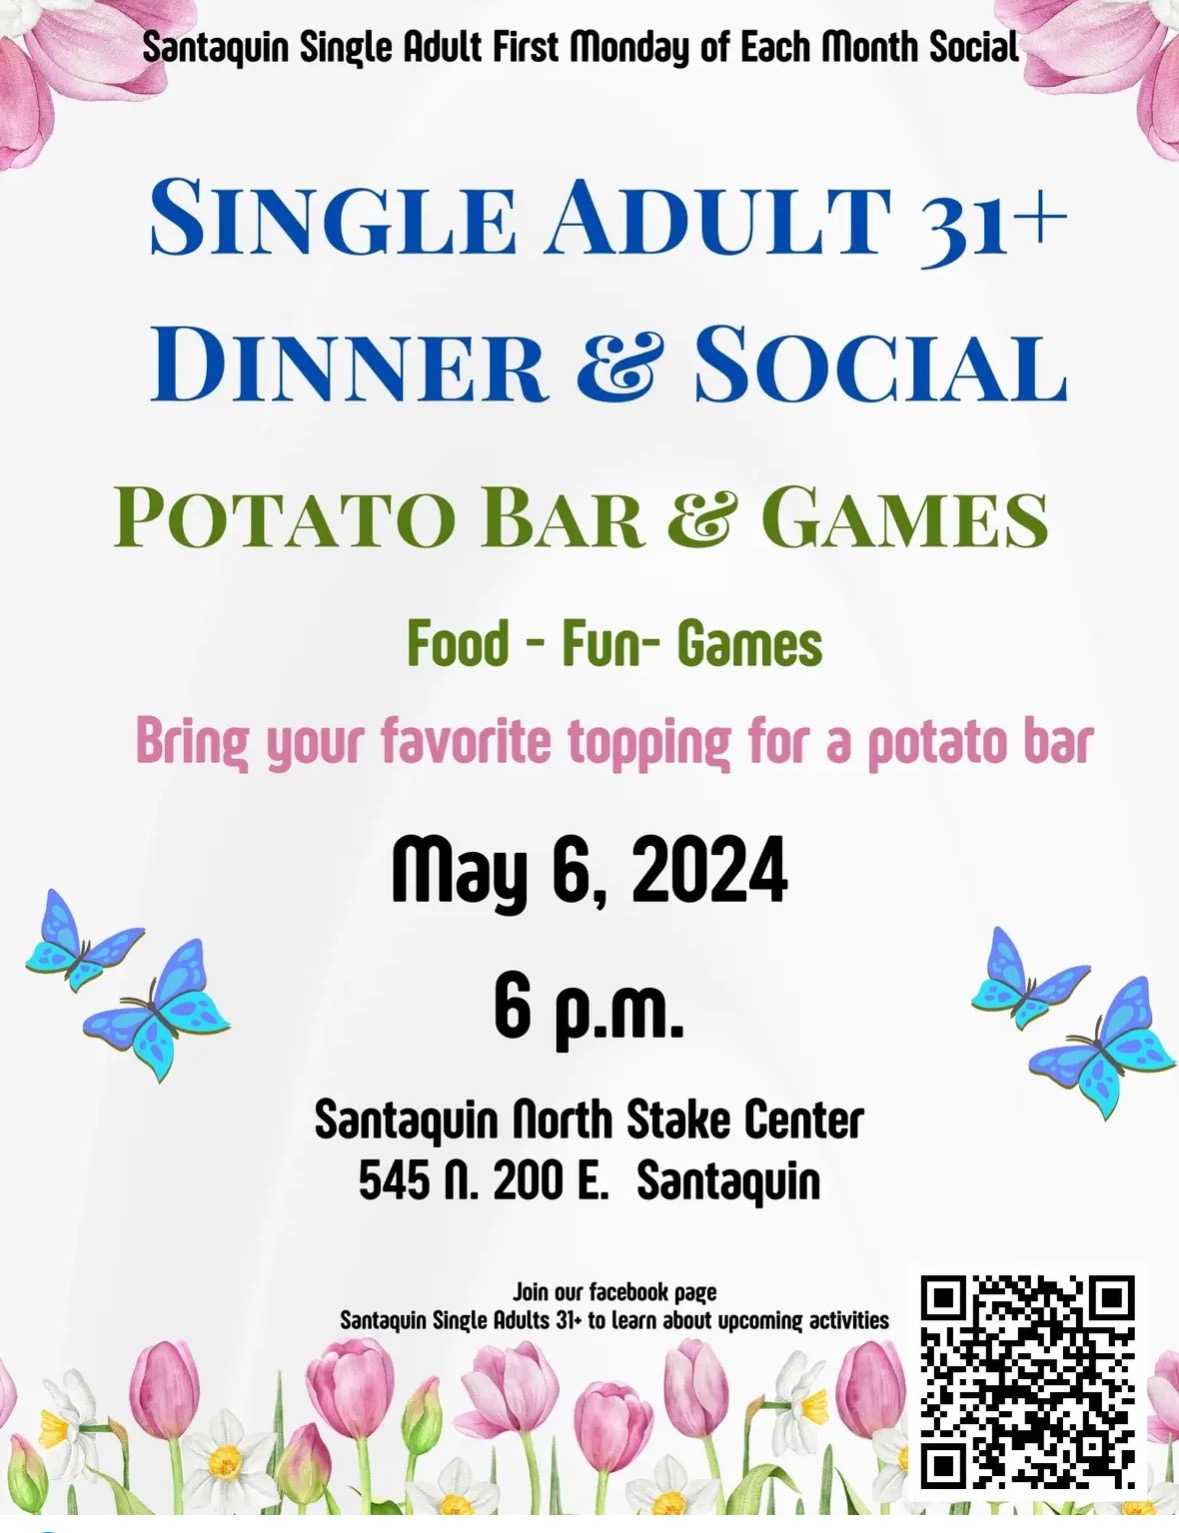 Santaquin Dinner & Social